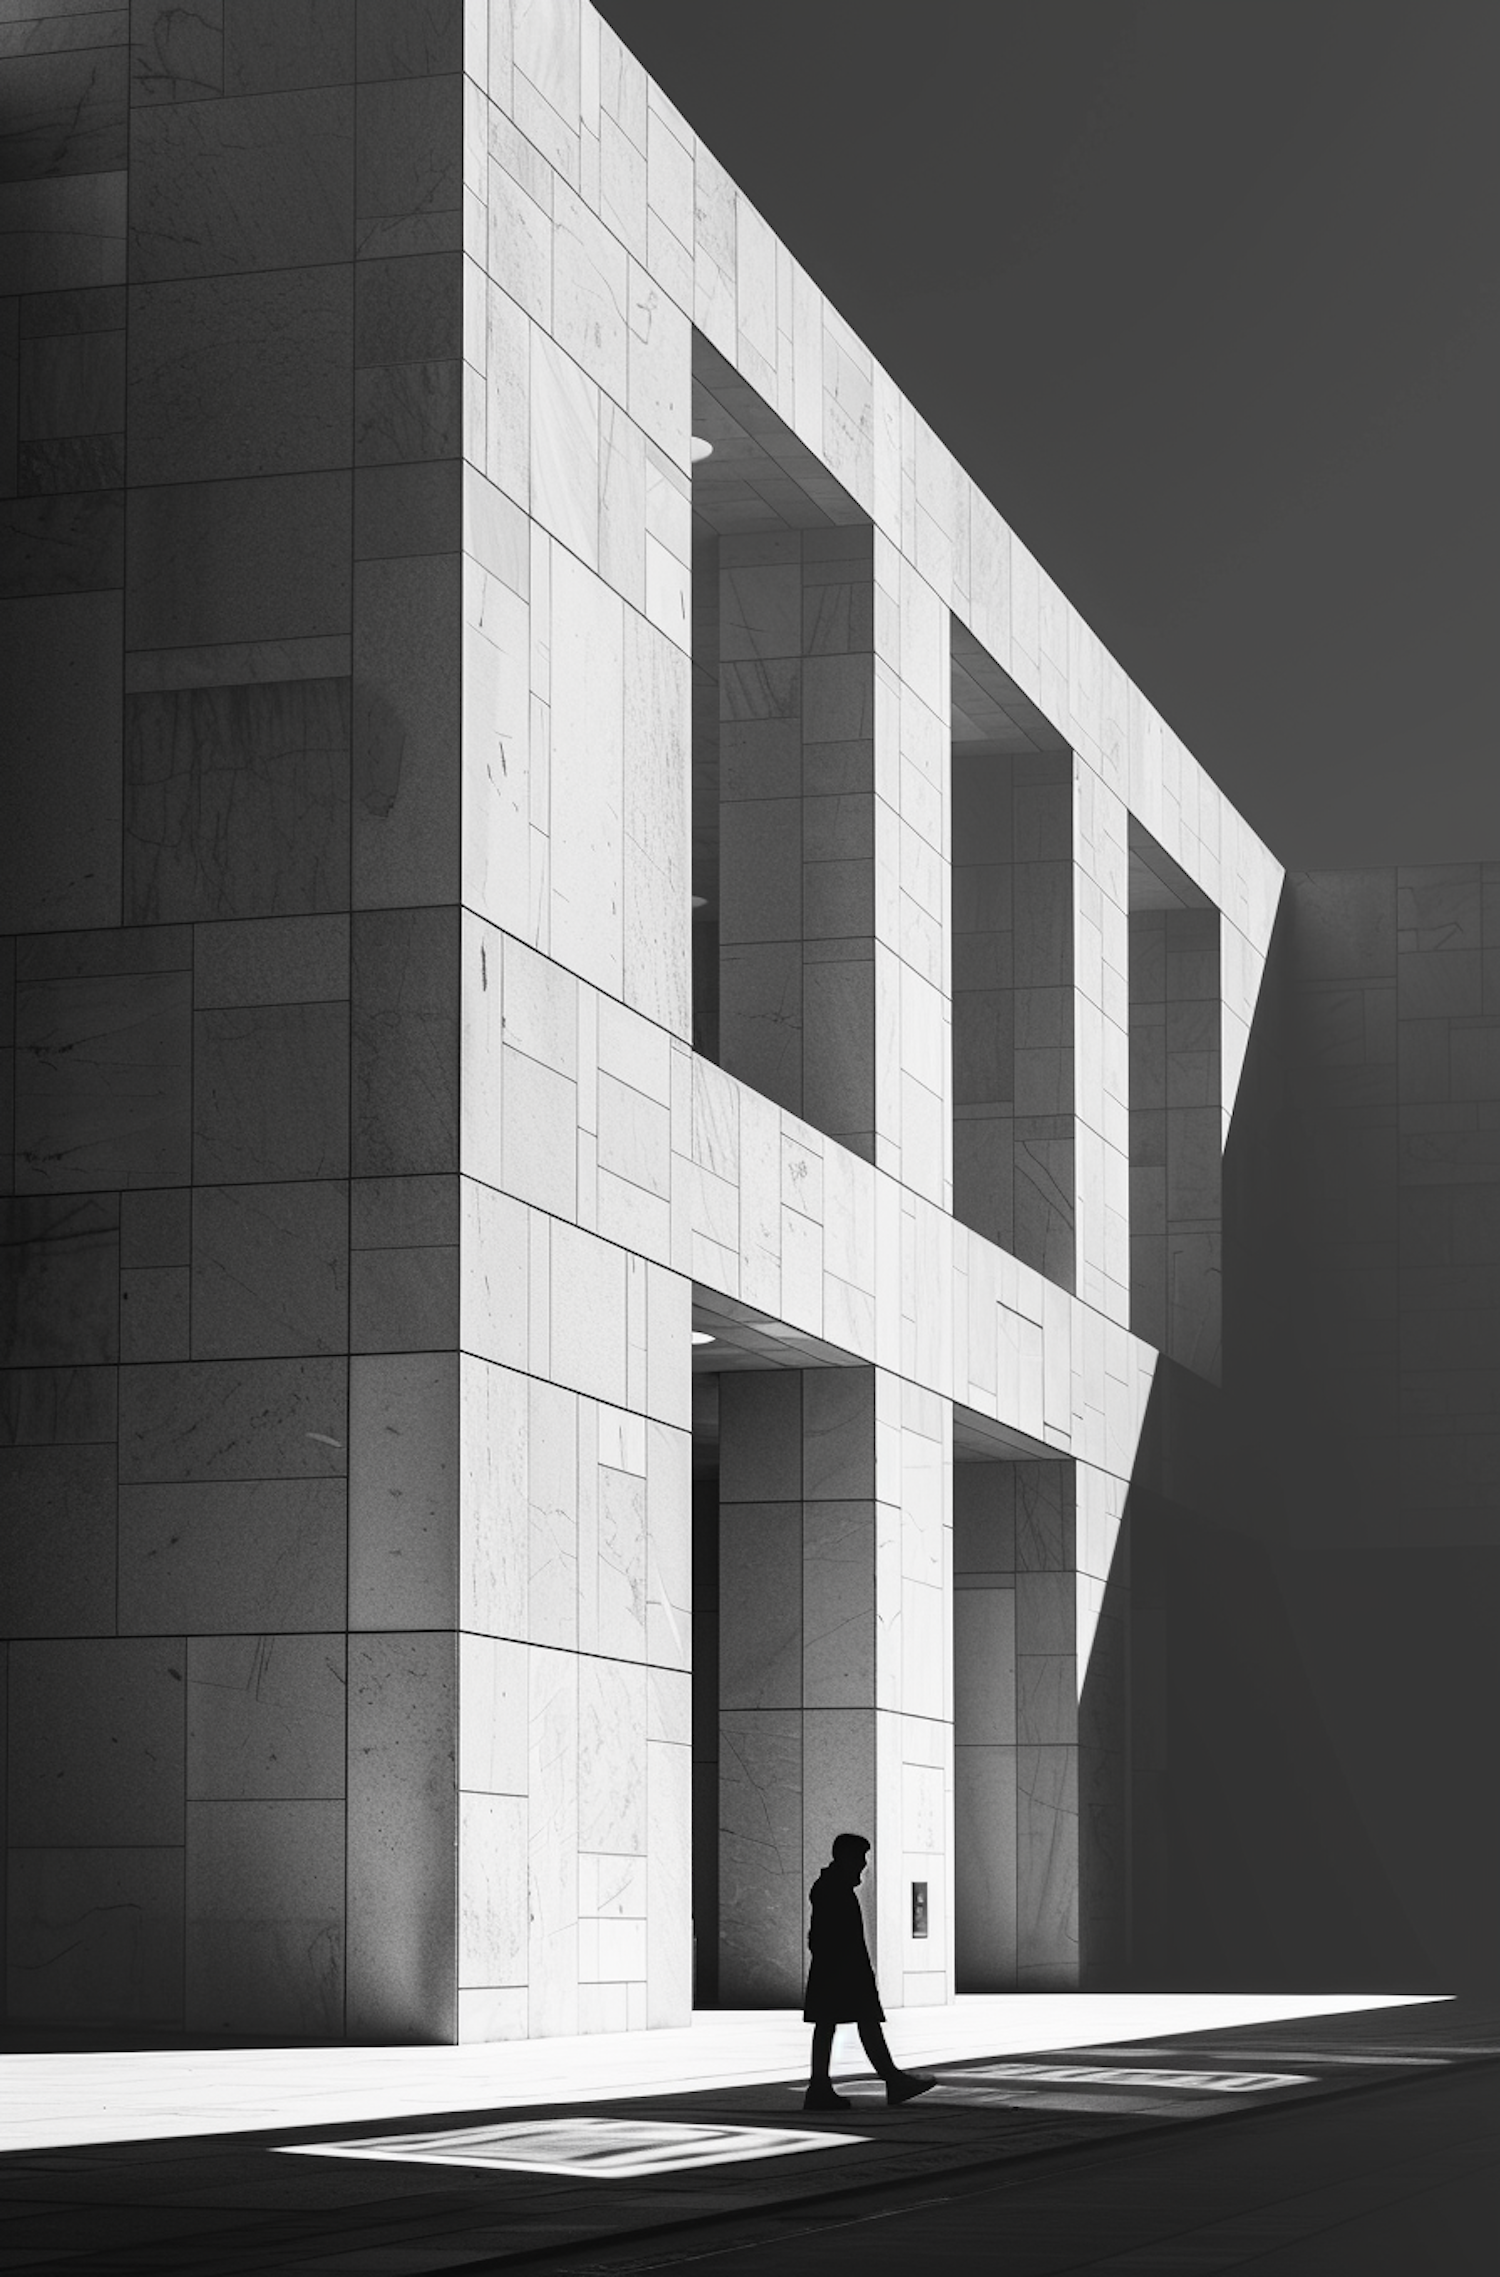 Solitude in Monochrome Architecture